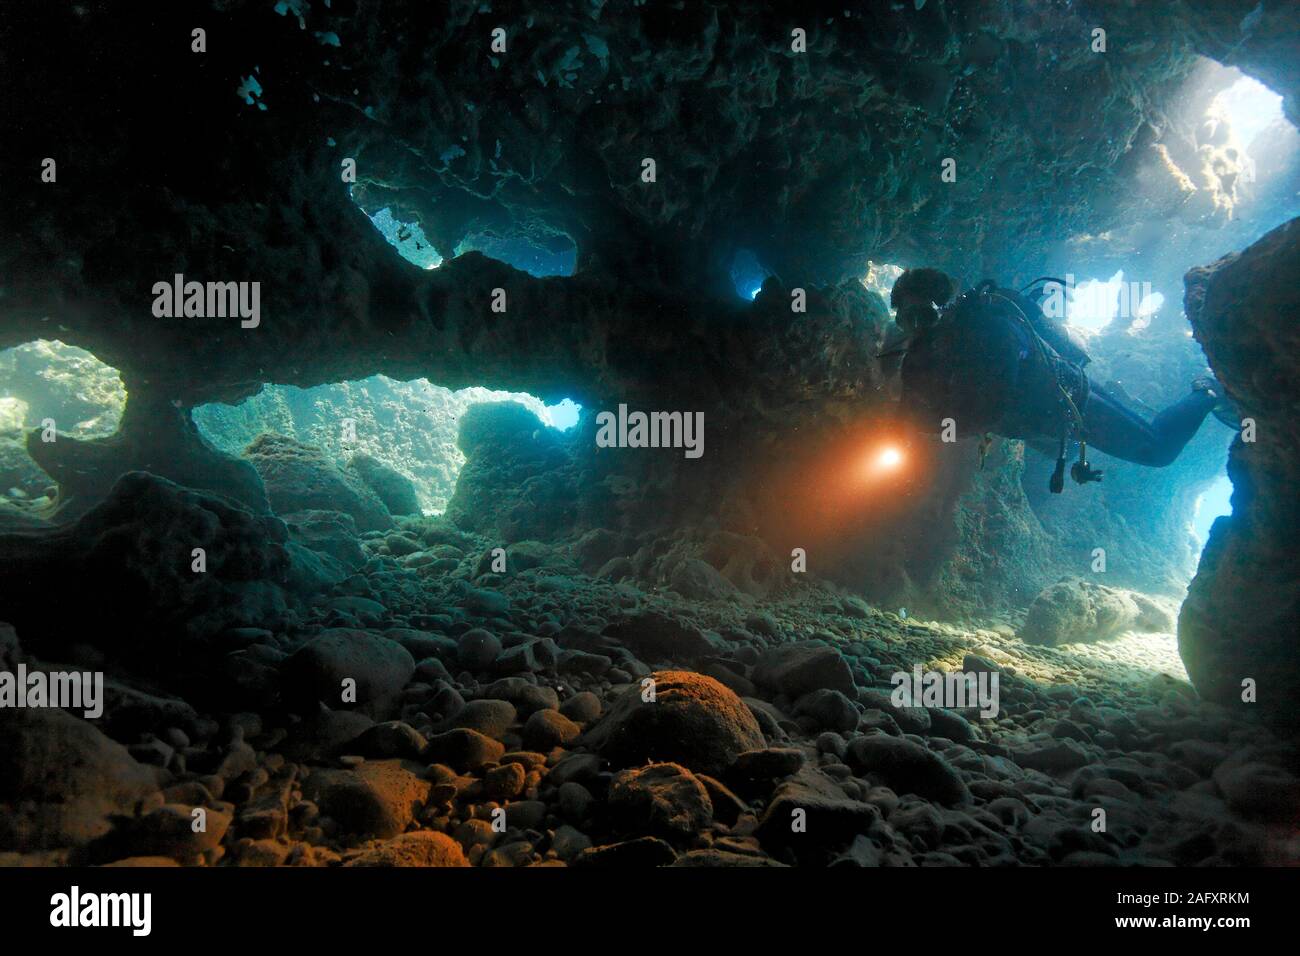 Taucher dringt in eine Unterwasserhöhle ein, Zakynthos, Griechenland | Scuba diver Eingabe einer Unterwasserhöhle, Insel Zakynthos, Griechenland Stockfoto